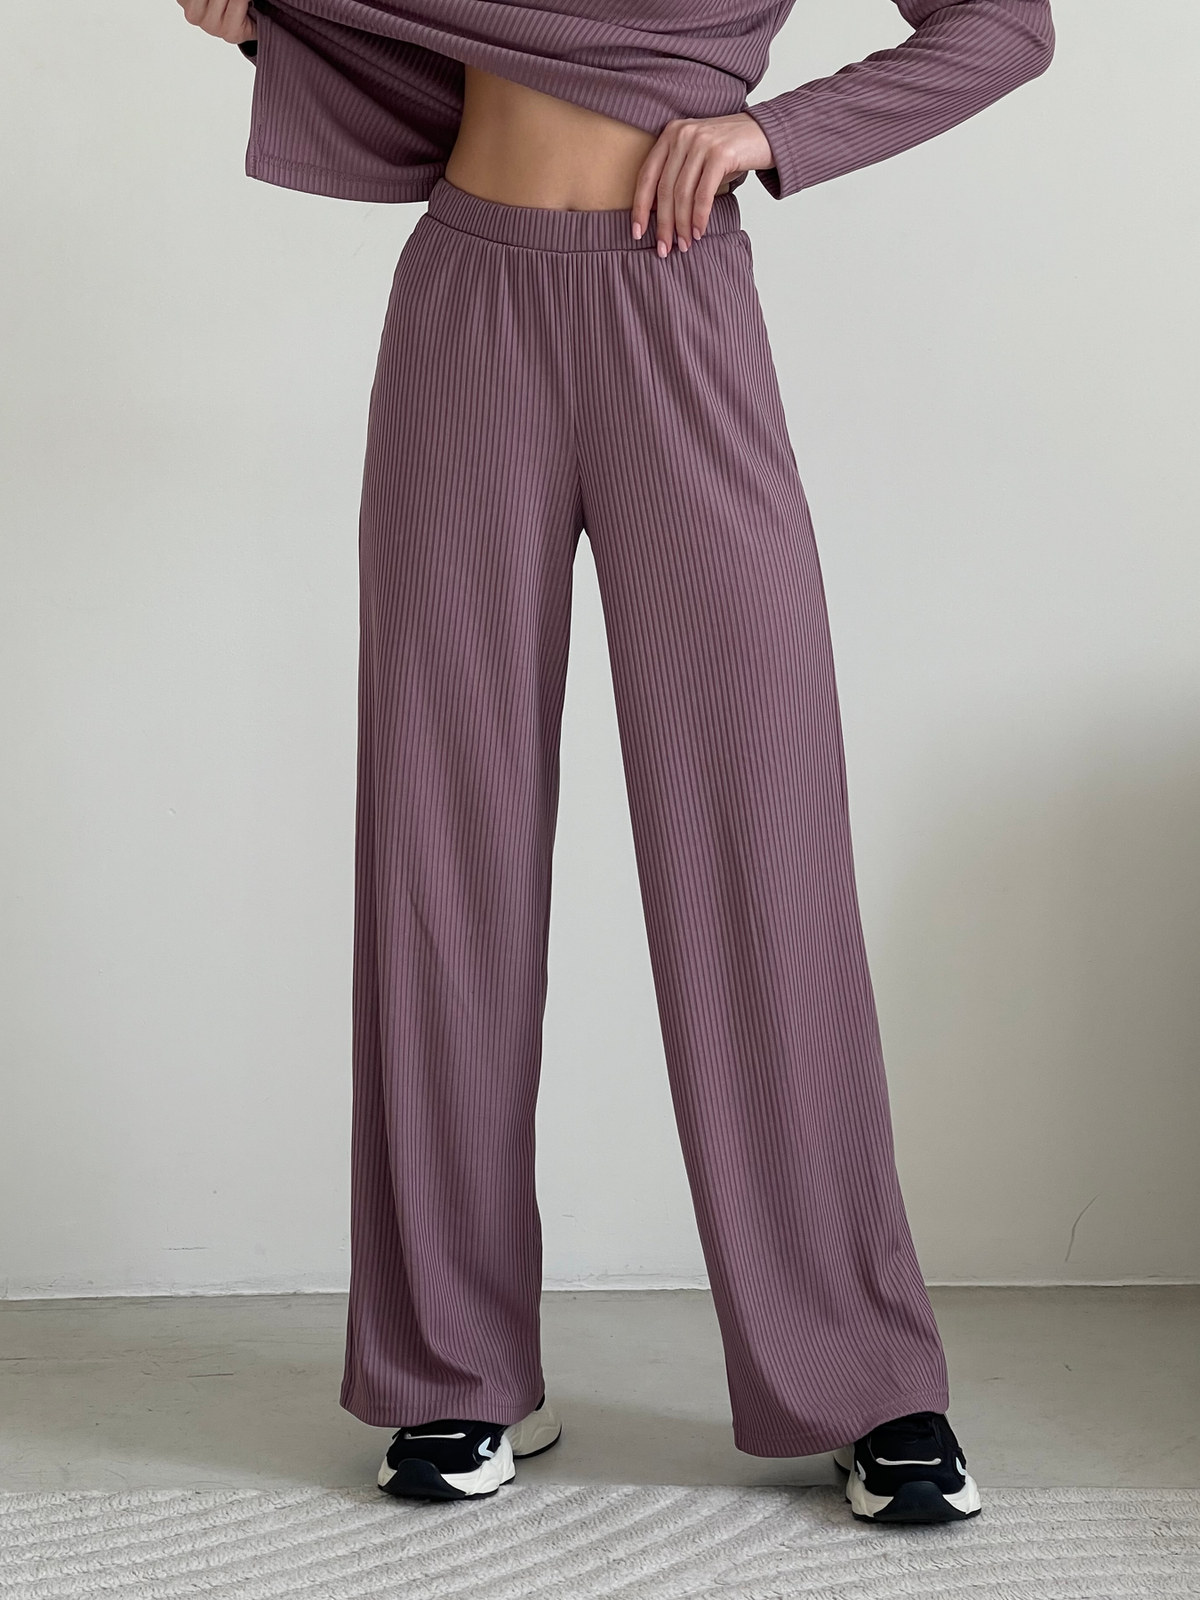 Купить Костюм с широкими брюками в рубчик фиолетовый Merlini Менто 100001162, размер 42-44 (S-M) в интернет-магазине